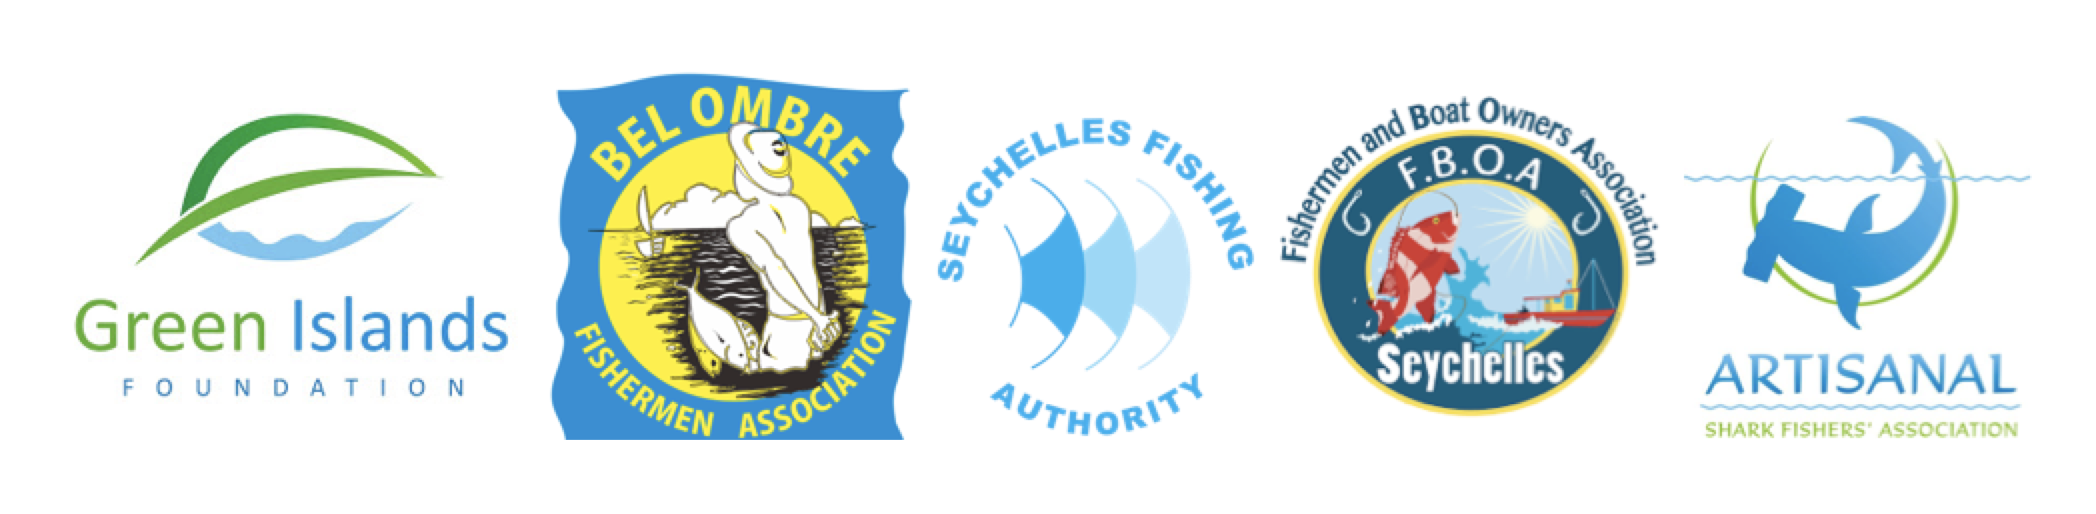 FBOA : Seychelles Fishing Boat Owners Association